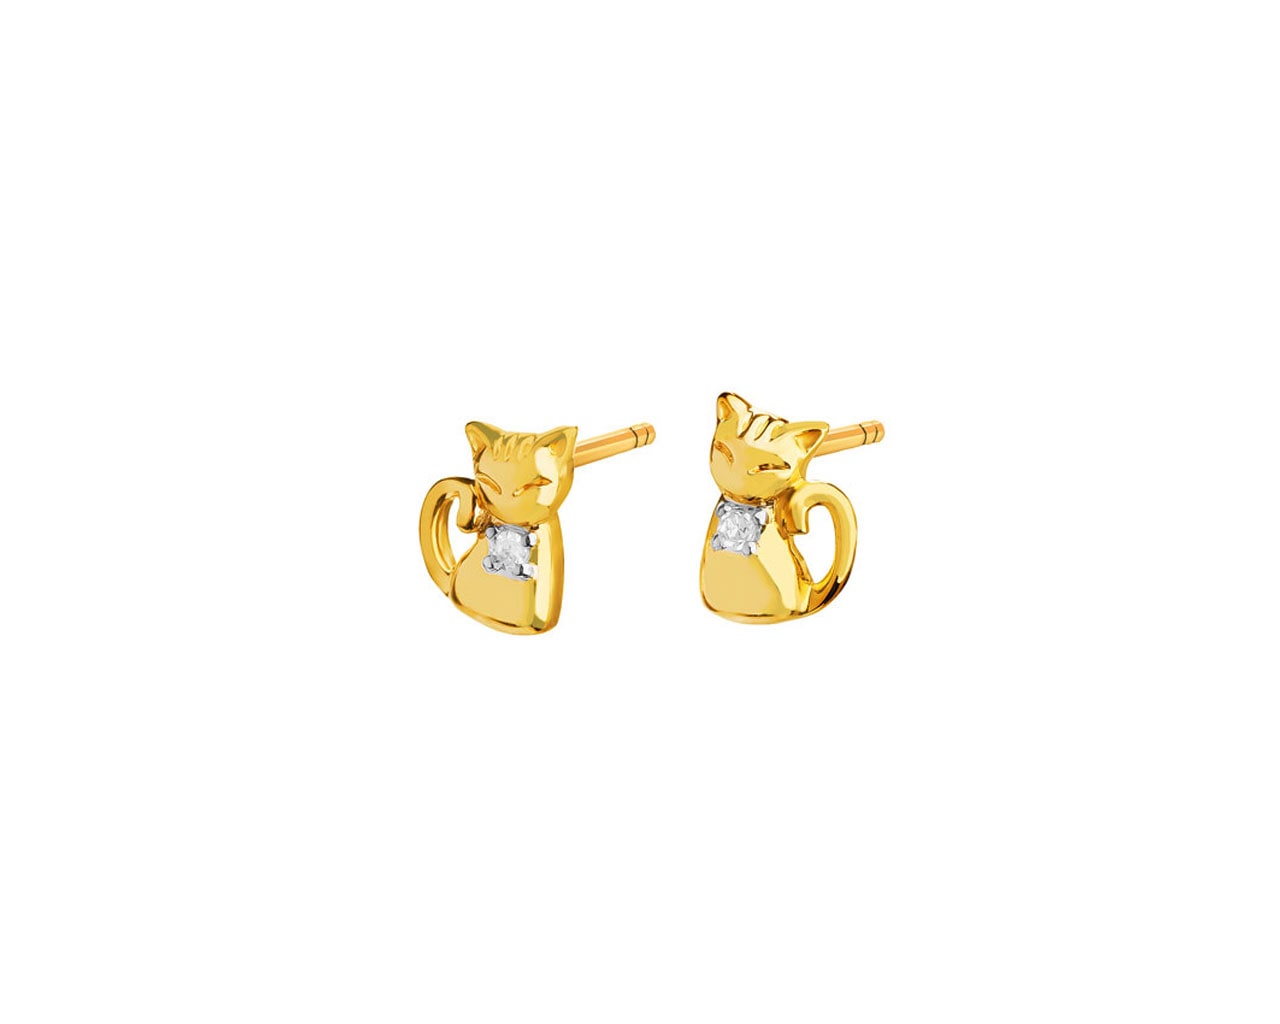 Kolczyki z żółtego złota z diamentami – koty 0,01 ct - próba 375